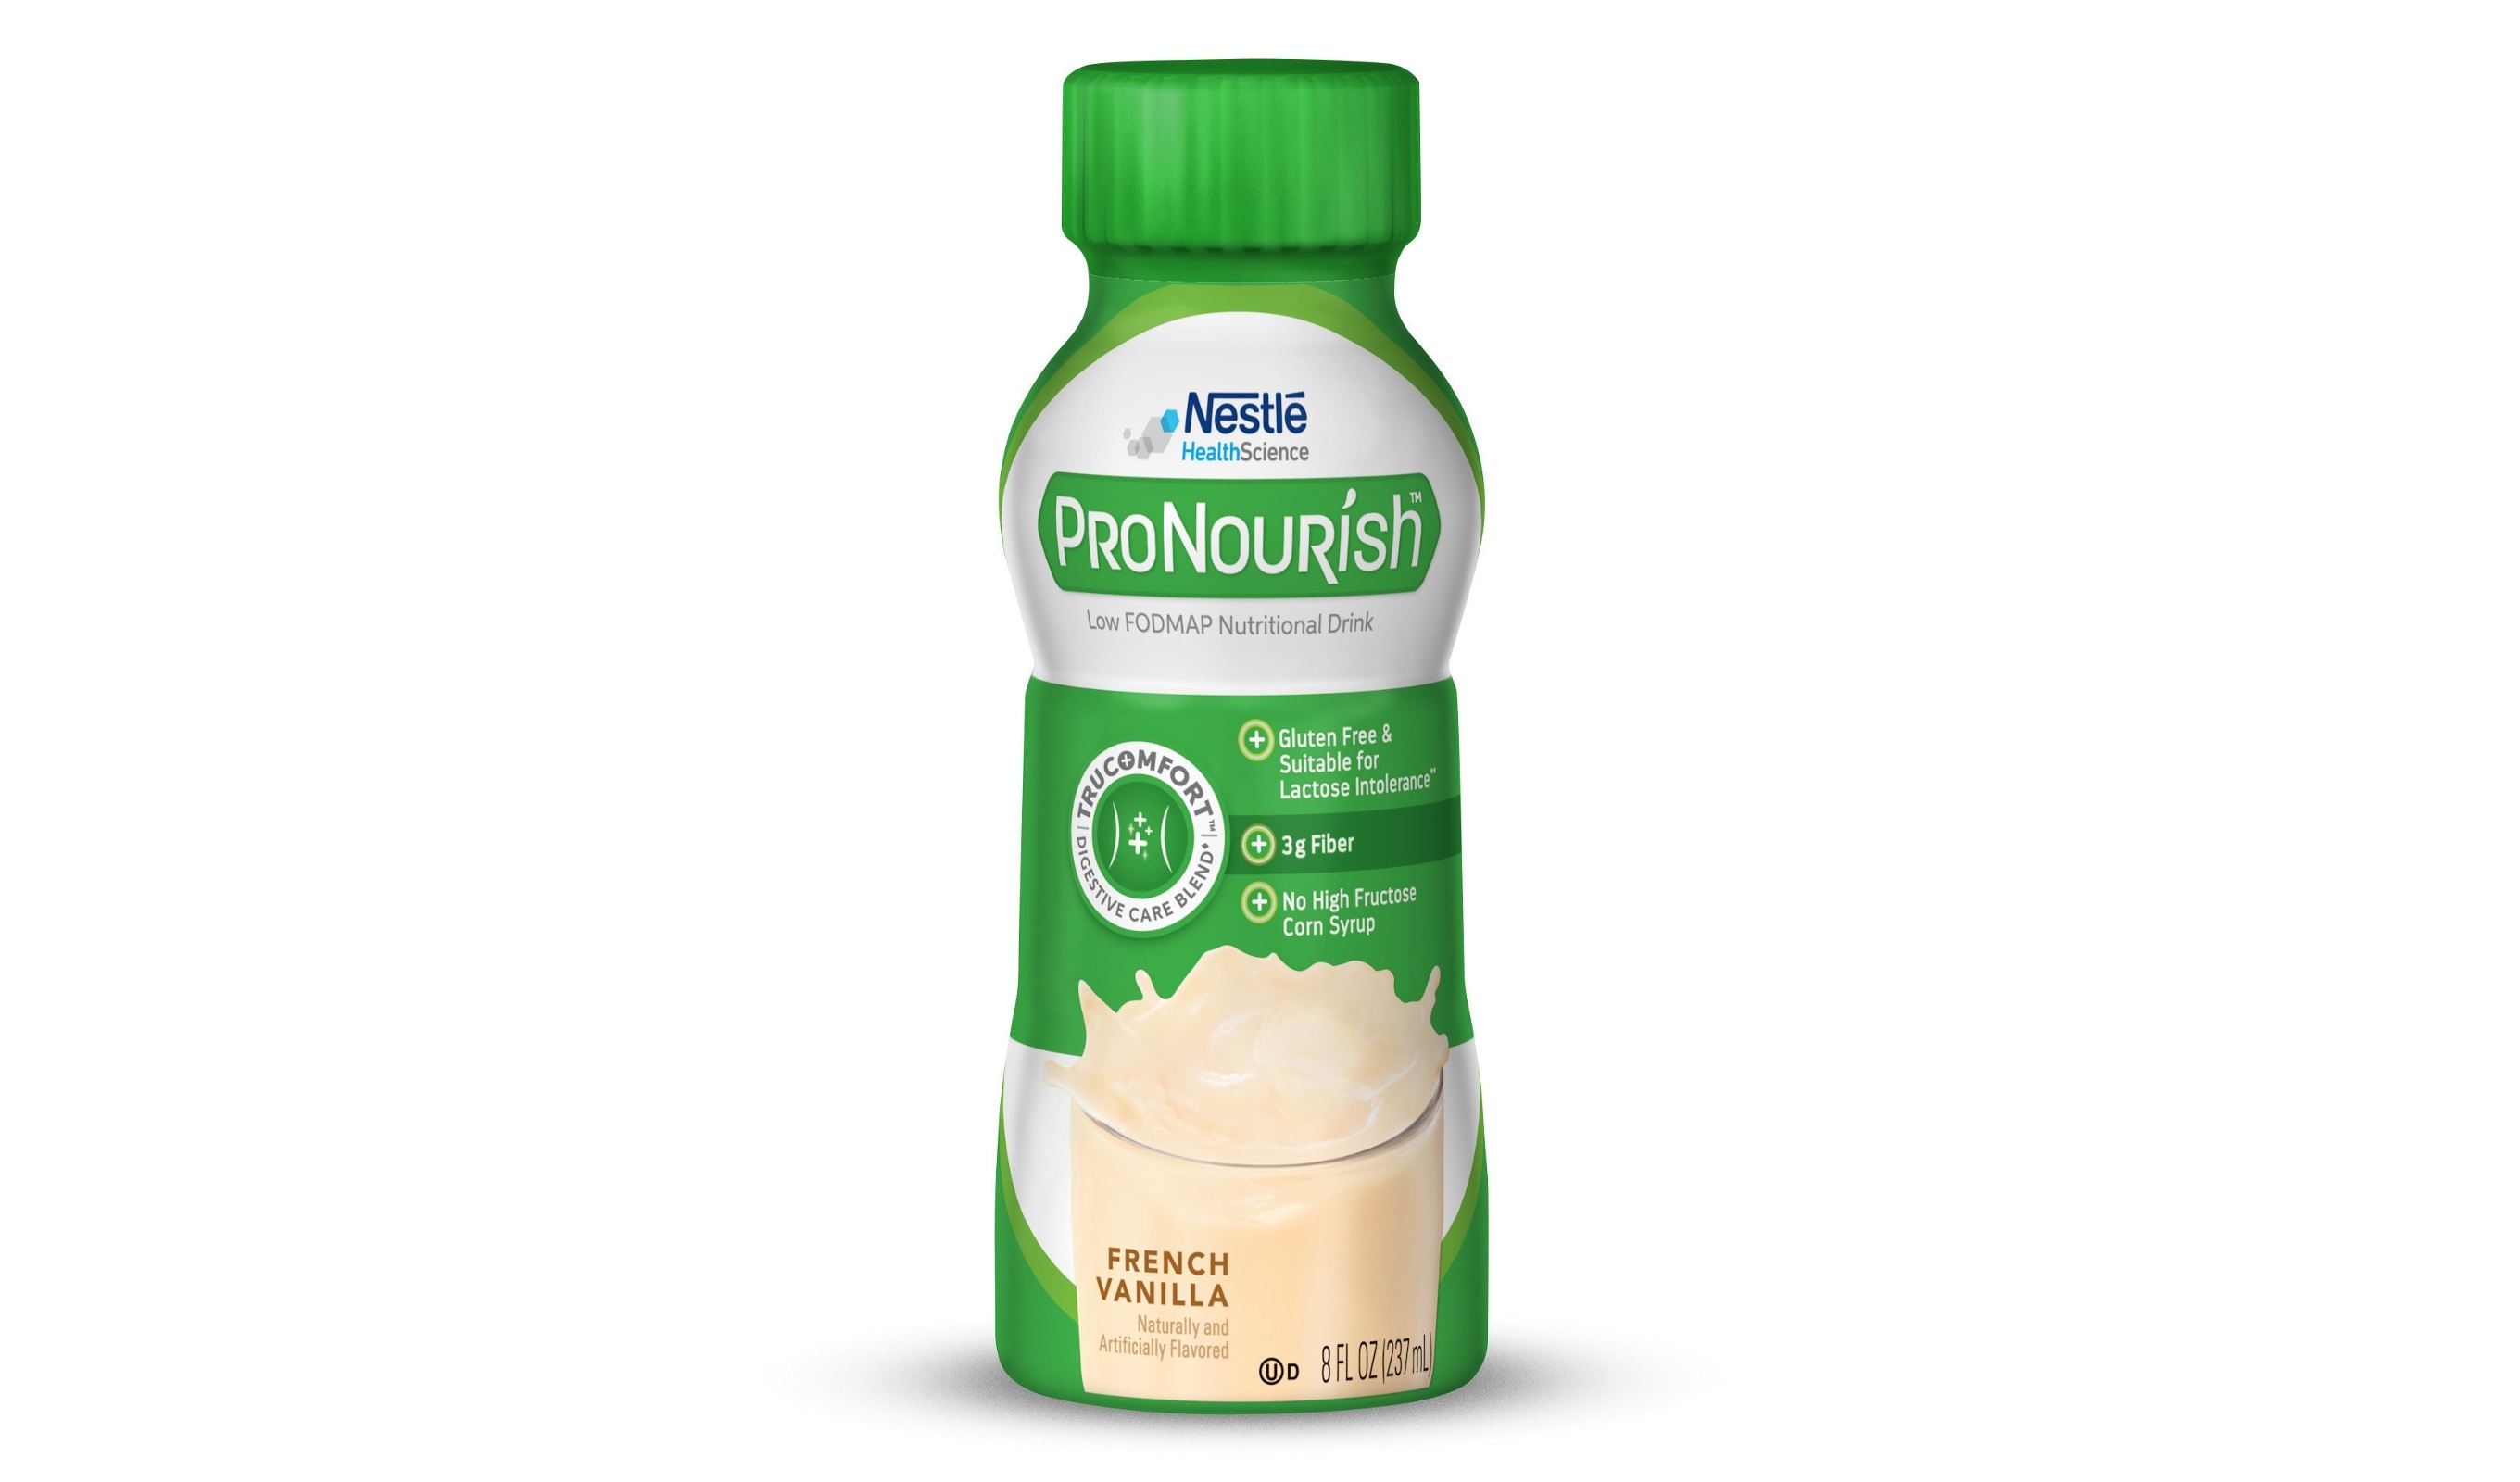 Nestlé Unveils ProNourish Low FODMAP Nutritional Drink